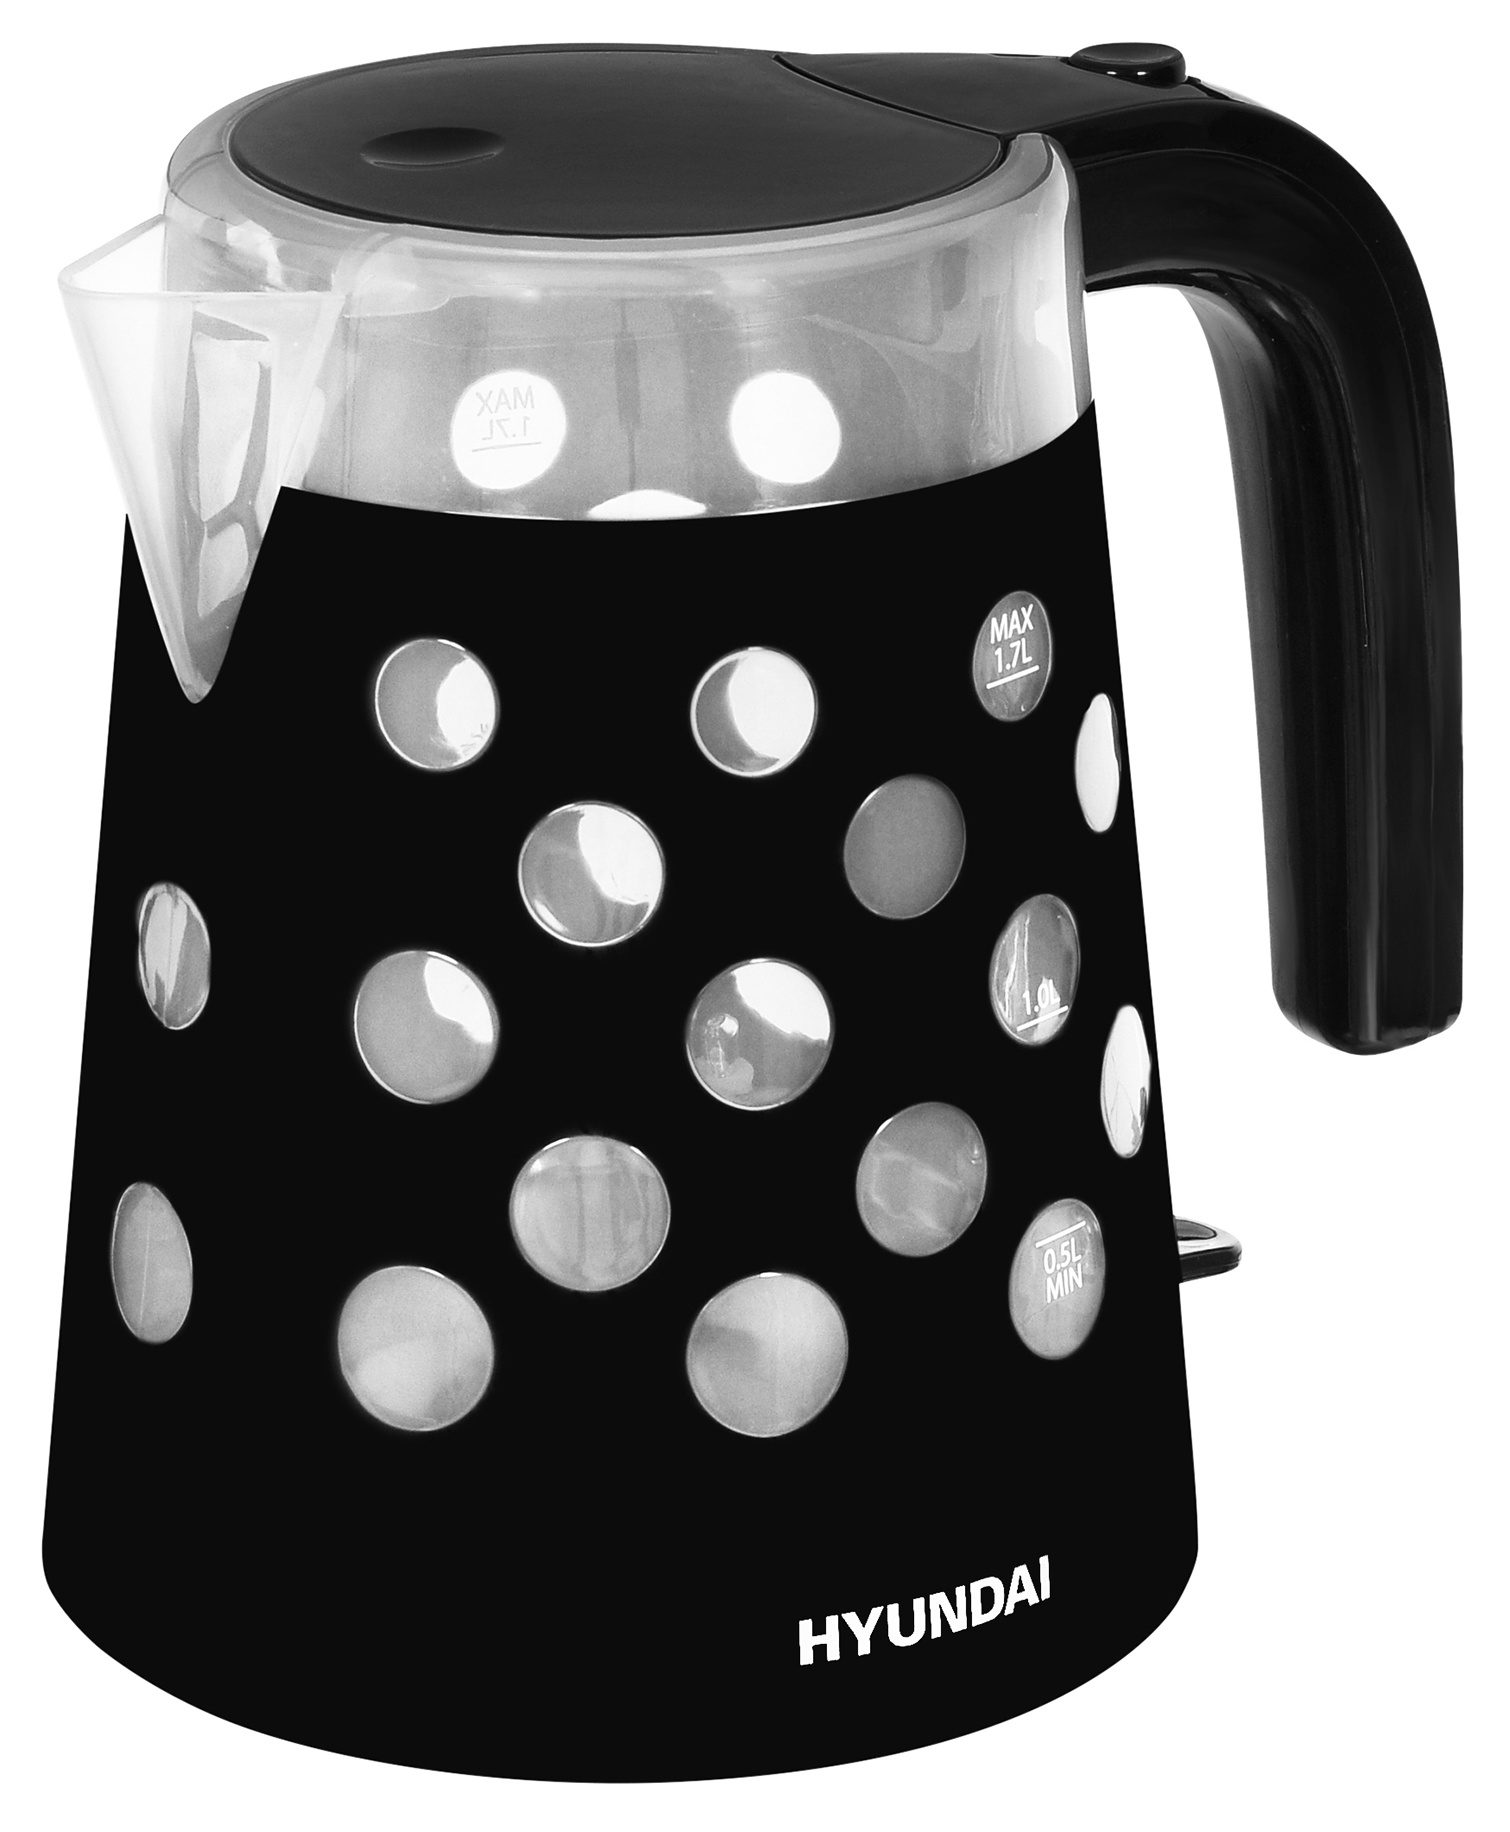 Чайник электрический HYUNDAI HYK-G2012 1.7 л прозрачный, черный чайник электрический hyundai hyk g2012 1 7 л прозрачный черный